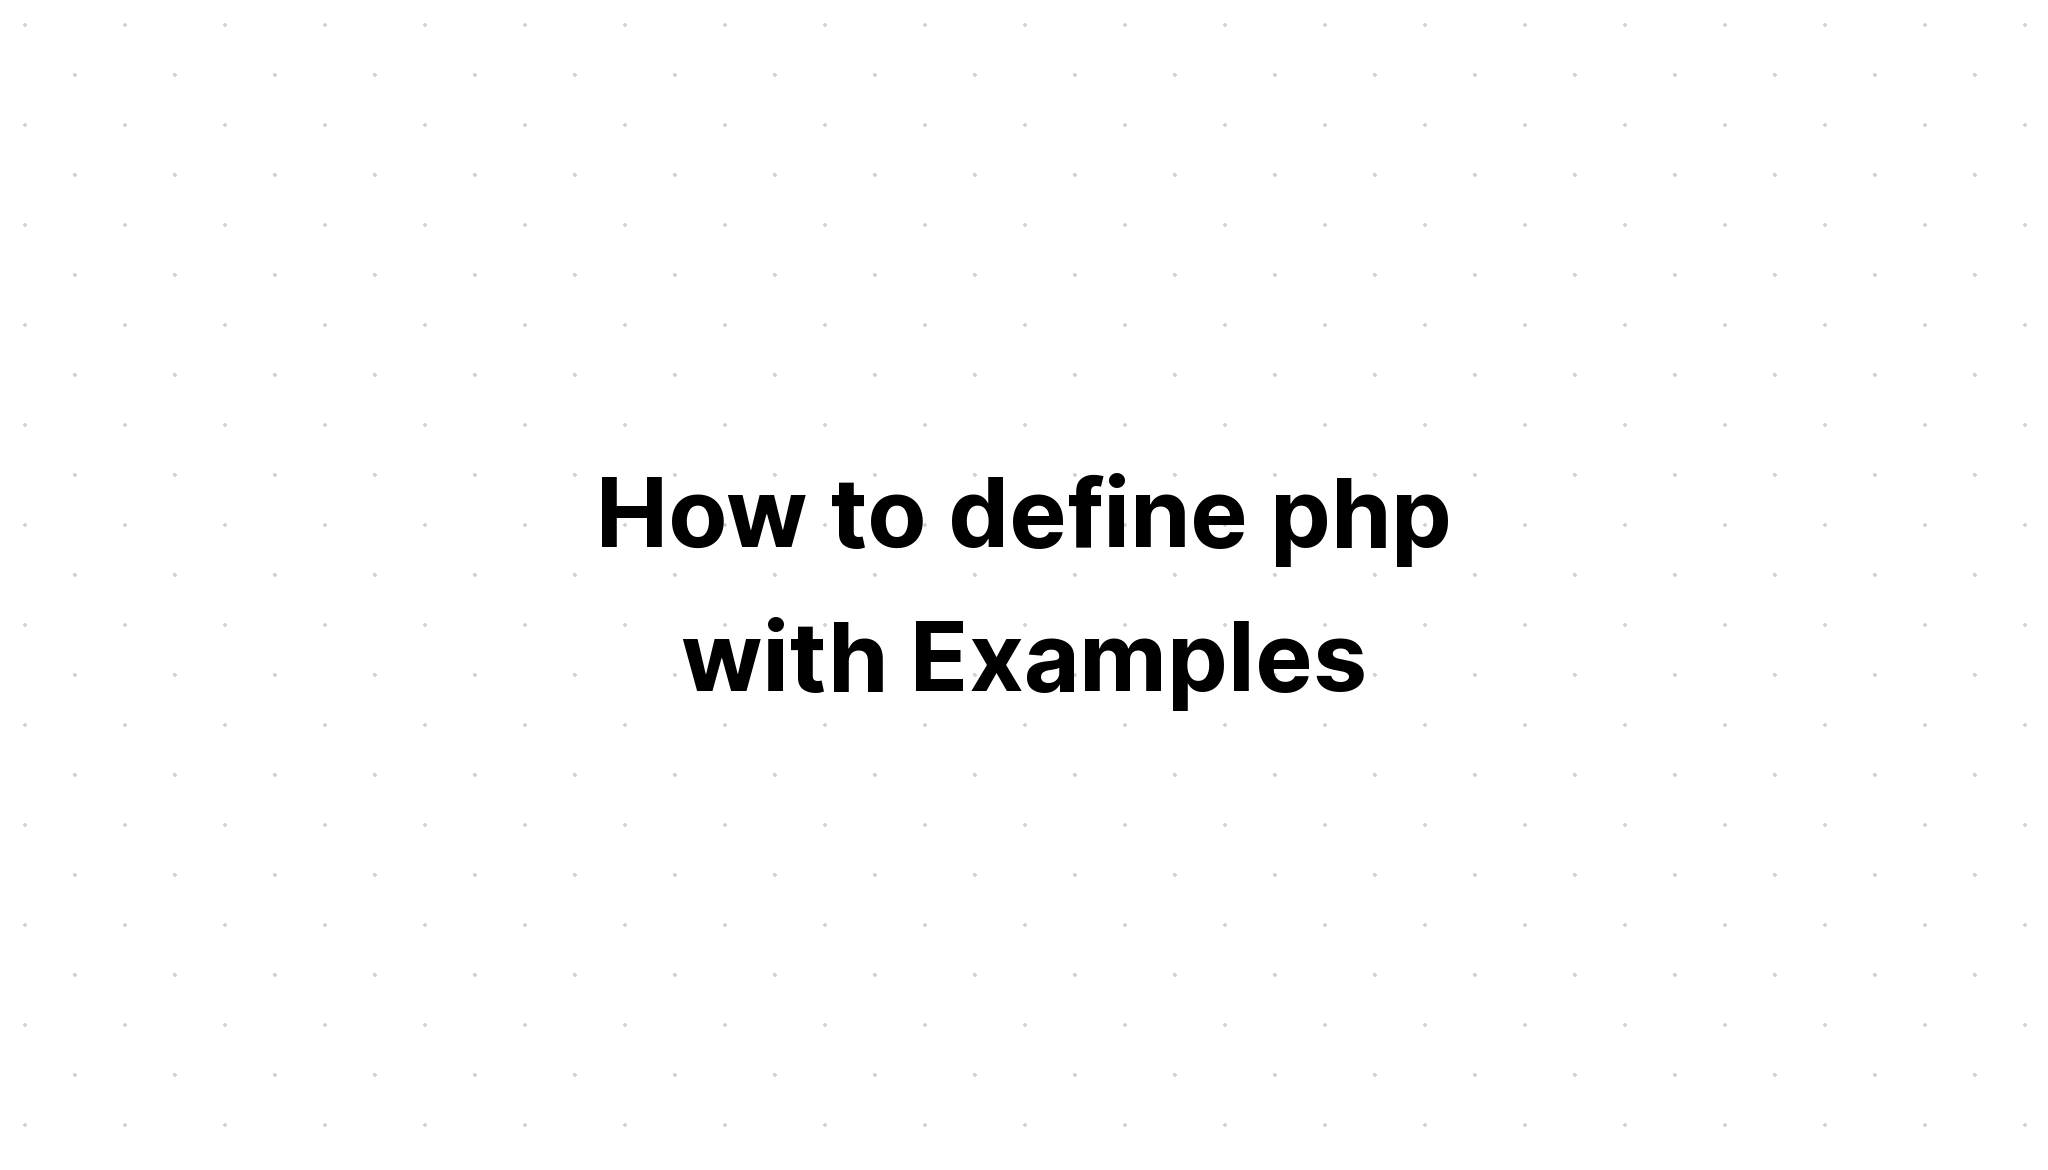 Cara mendefinisikan php dengan Contoh